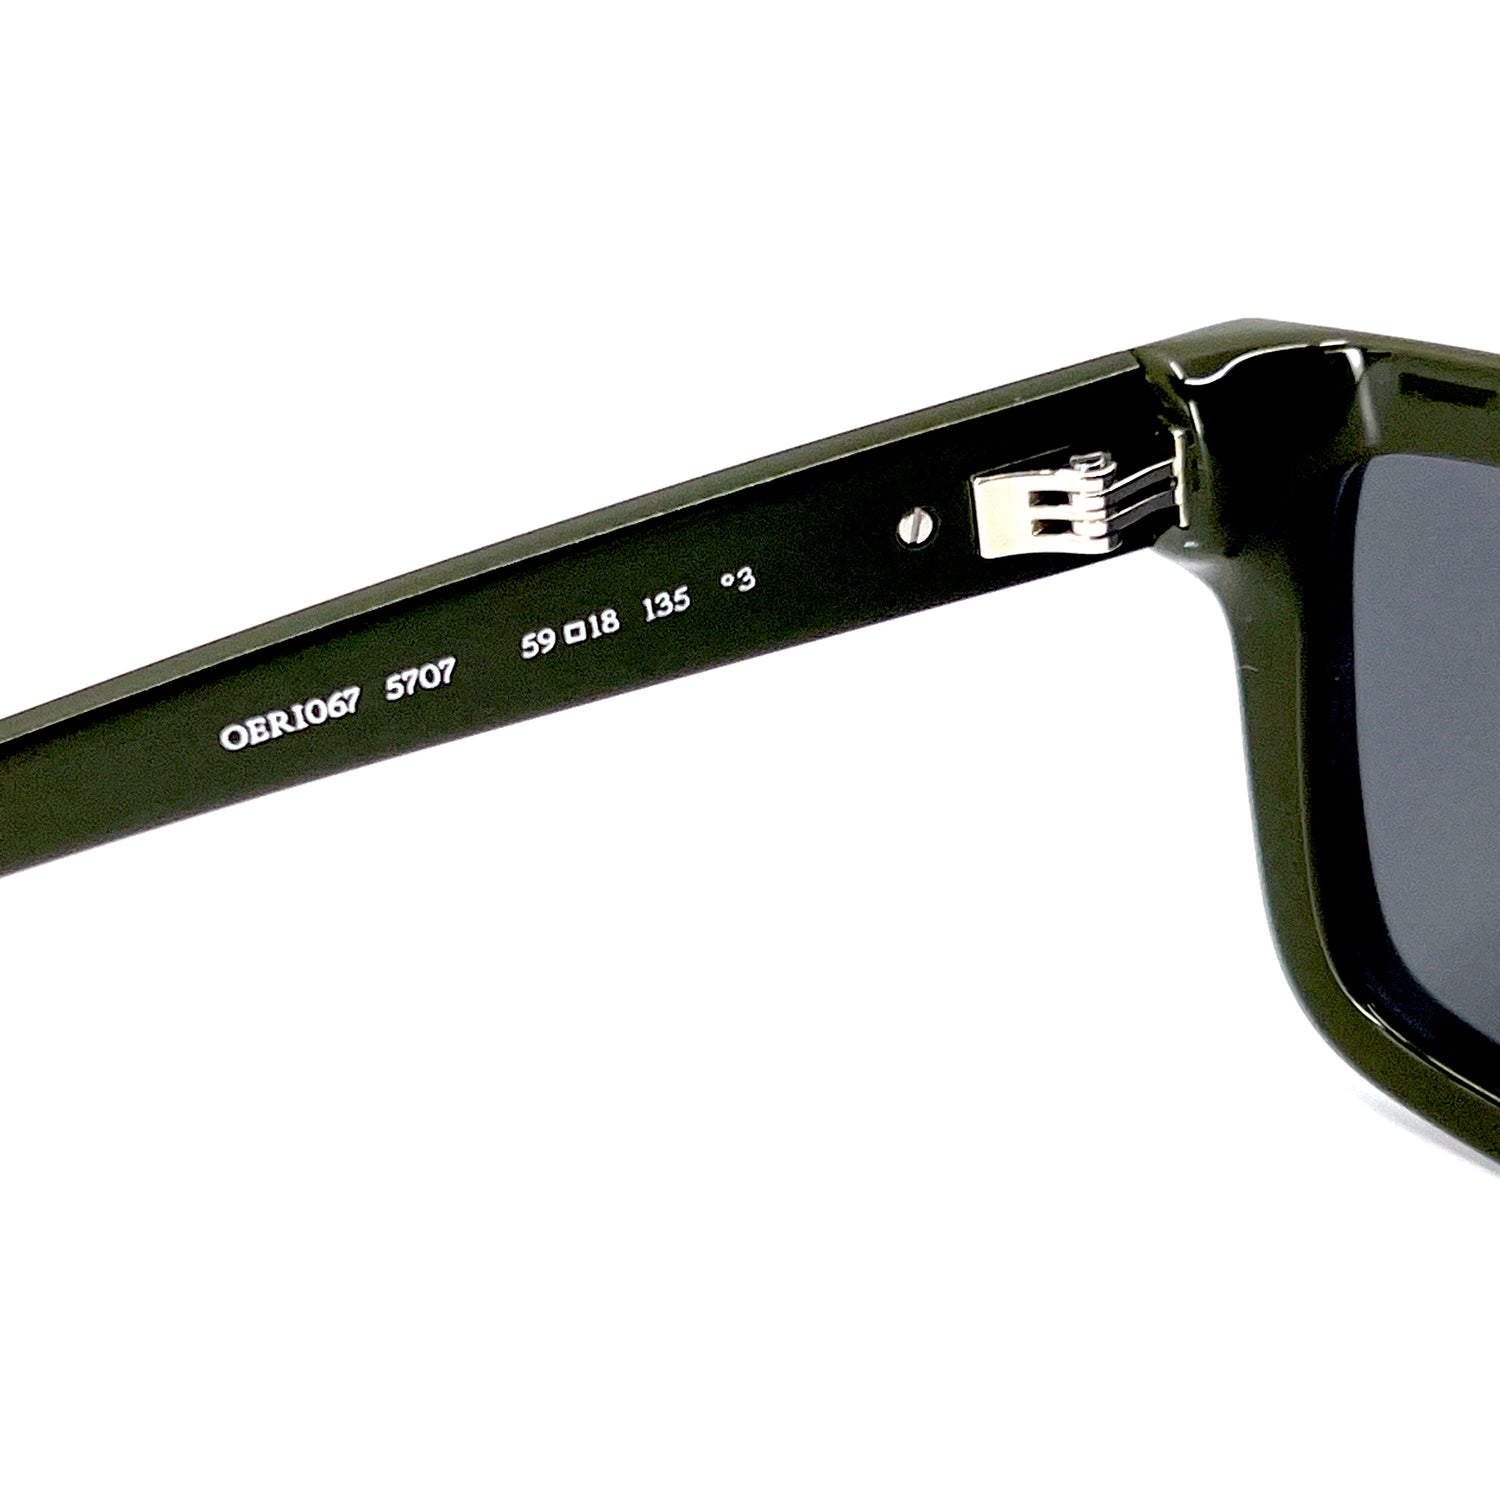 Off-White Portland Square Sunglasses - Farfetch